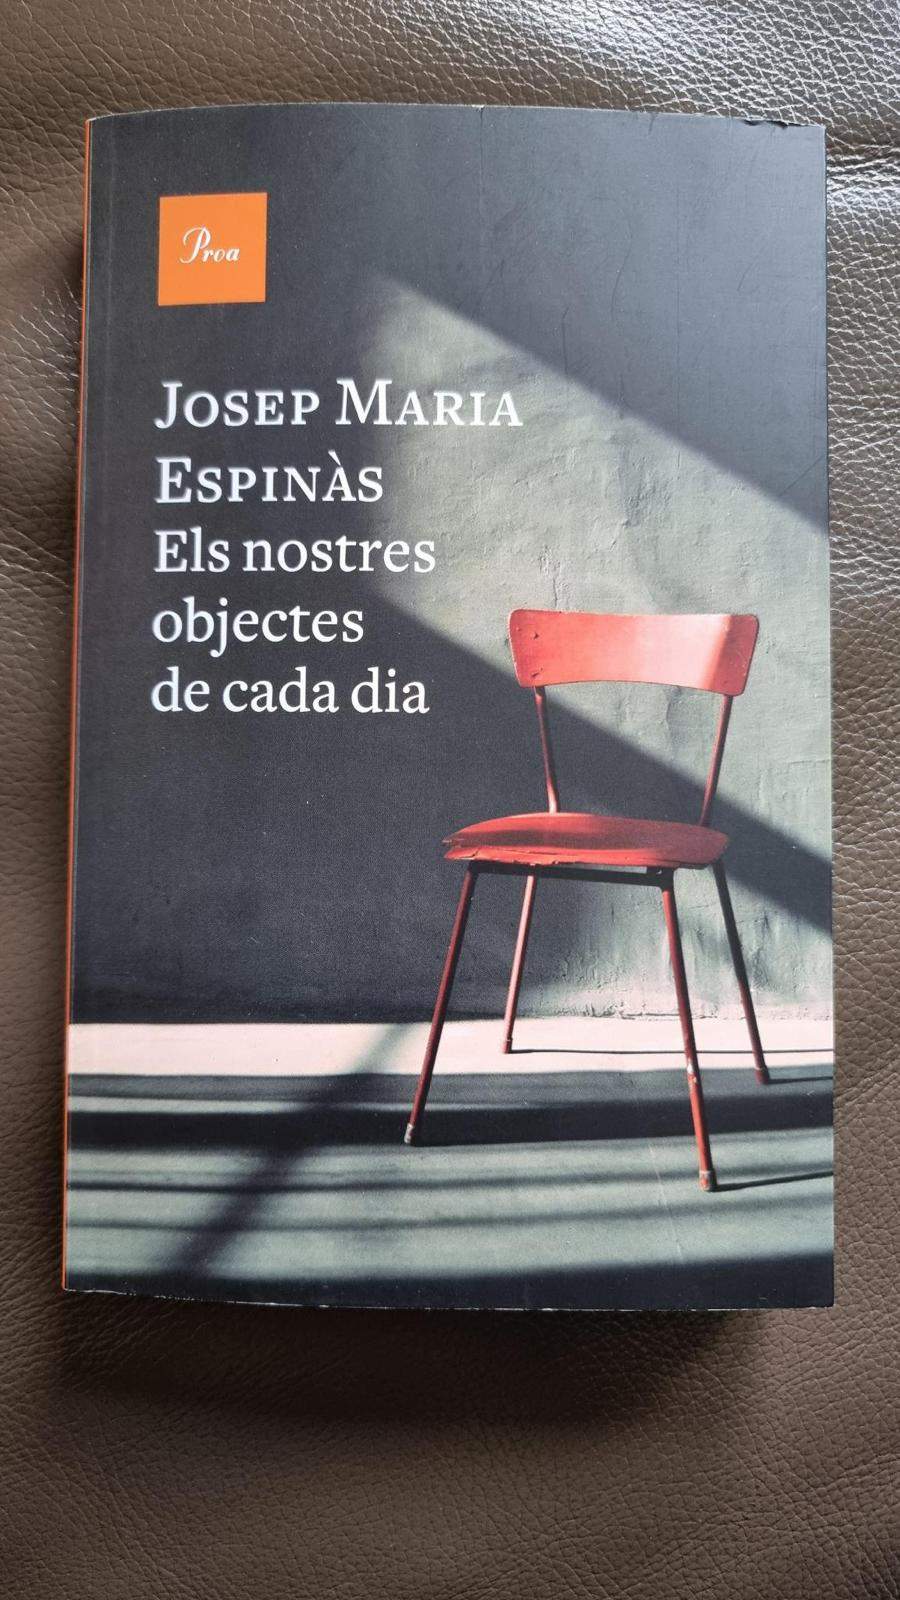 Els nostres objectes de cada dia, de Josep Maria Espinàs